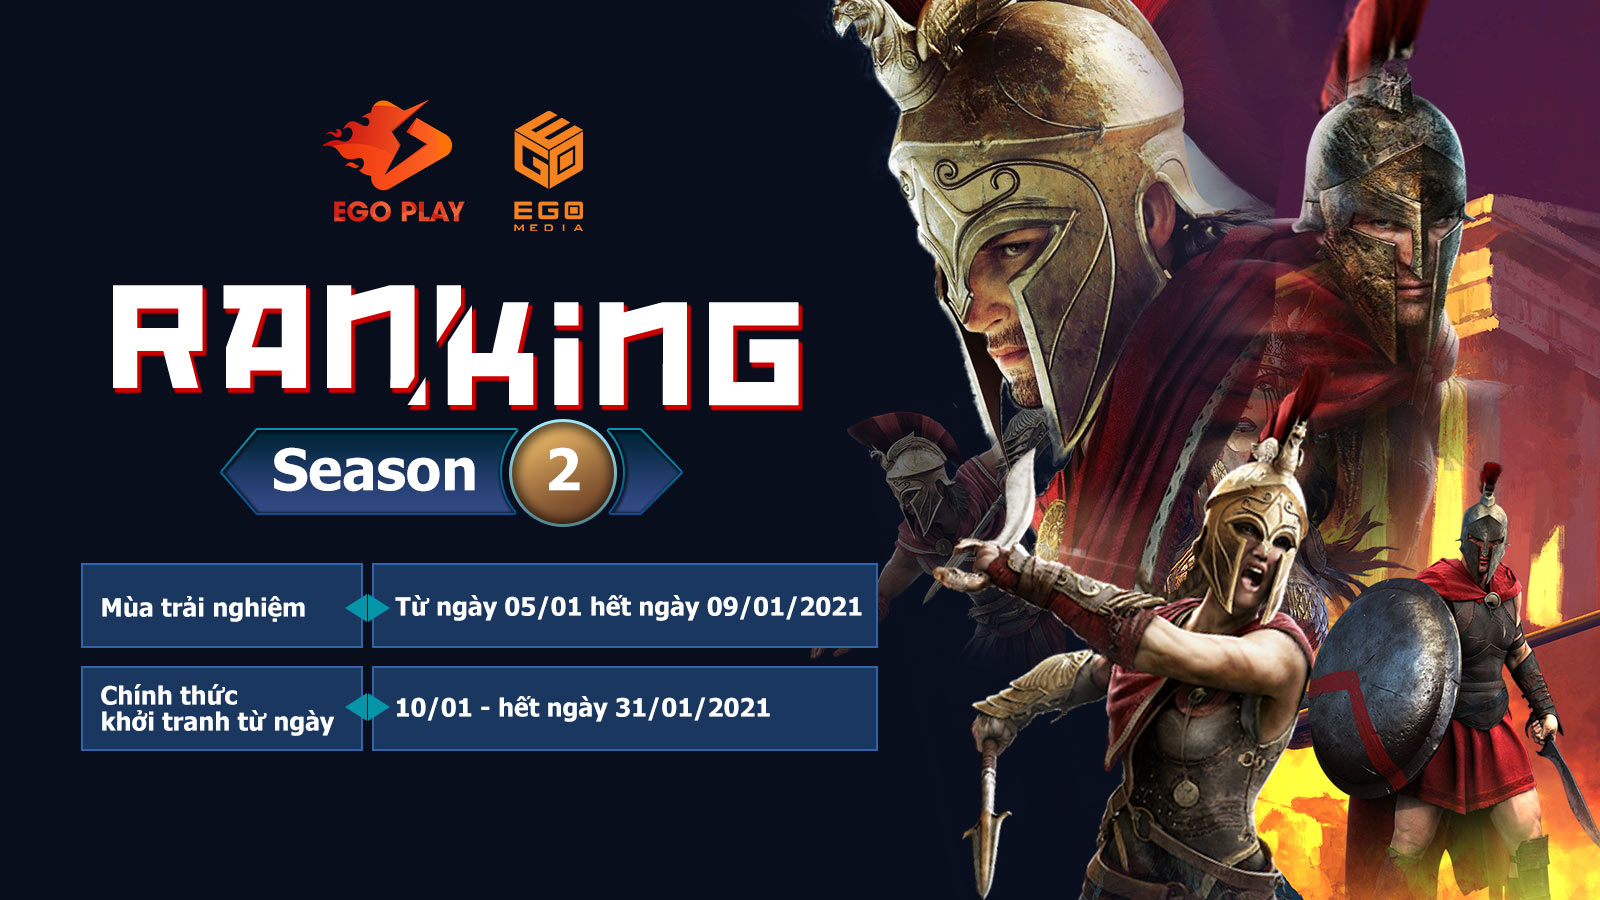 EGO Play 3.1.0 - Ranking Season 2: Một phiên bản hoàn hảo!